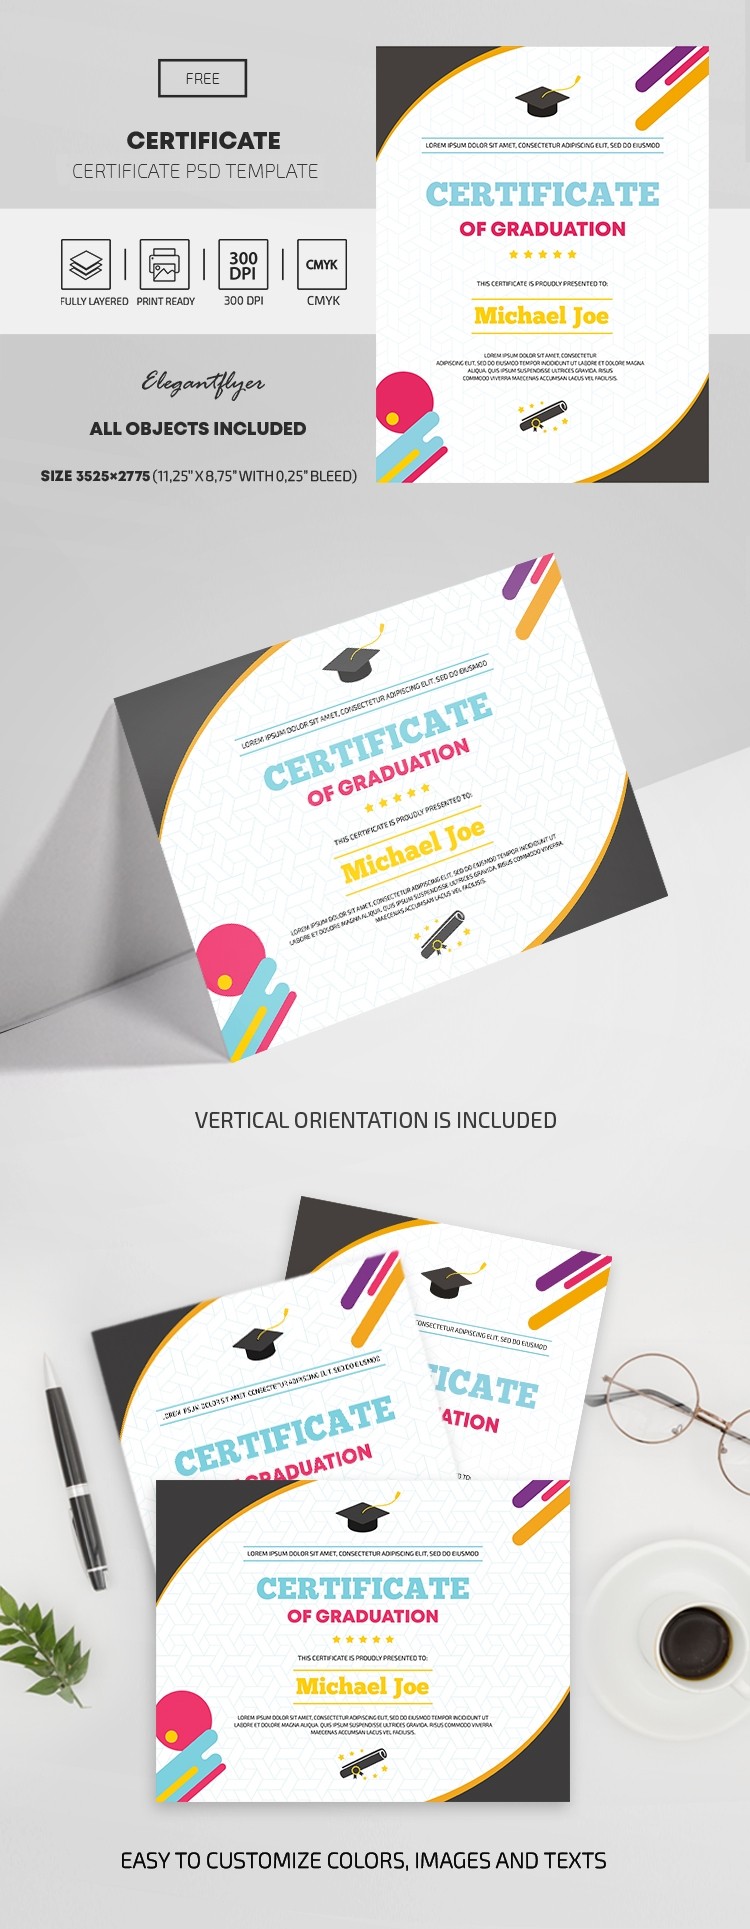 Certificado de graduación by ElegantFlyer